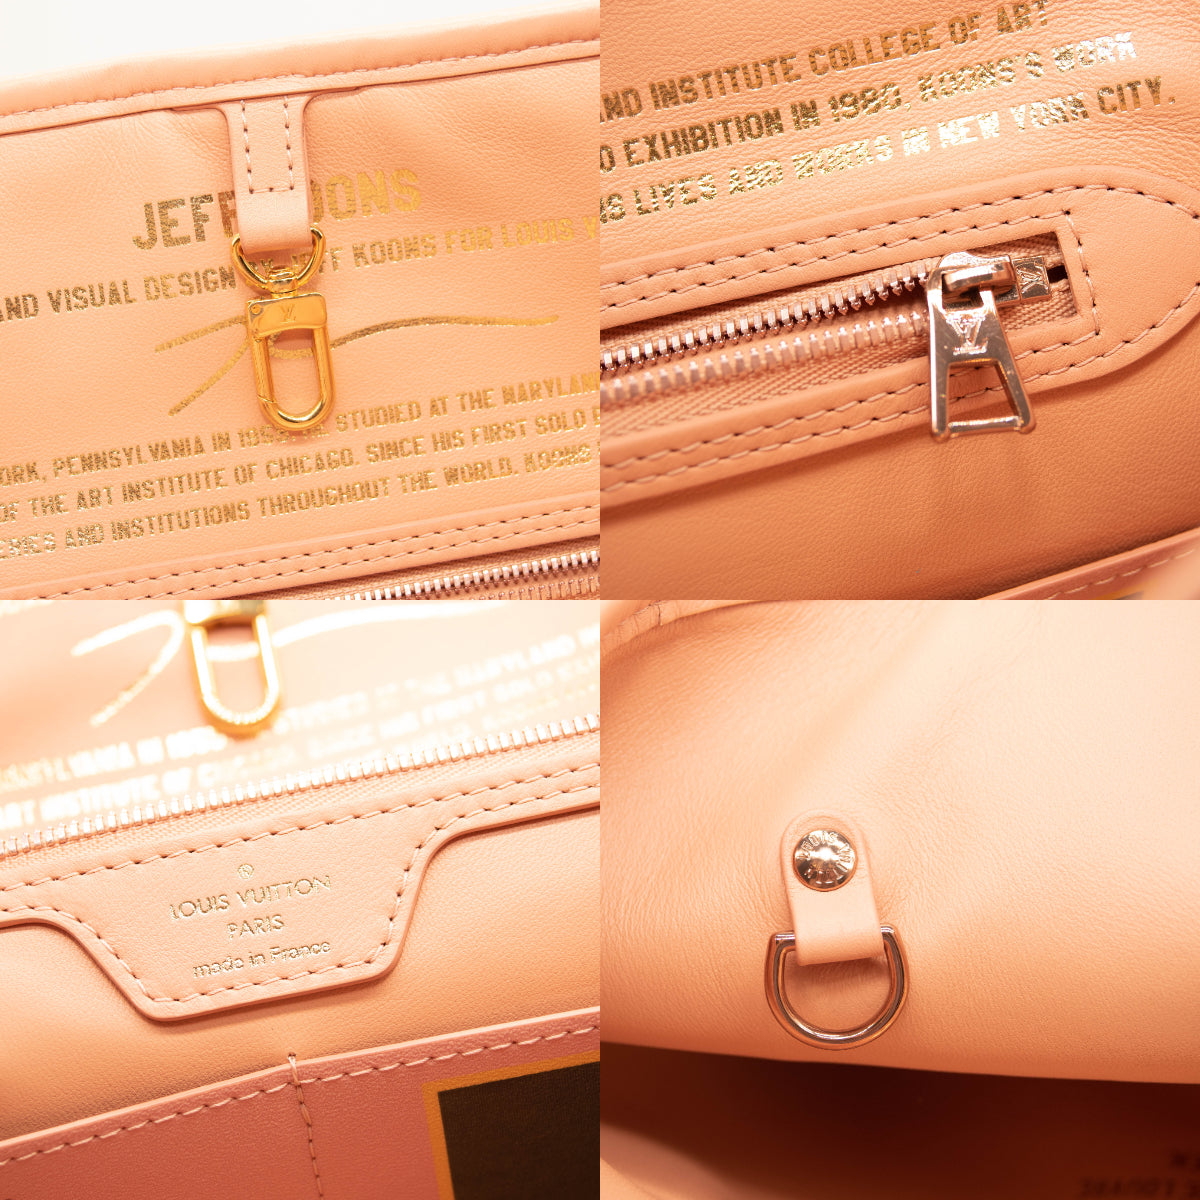 Louis Vuitton Masters x Jeff Koons Pink Speedy 30 Fragonard Bag